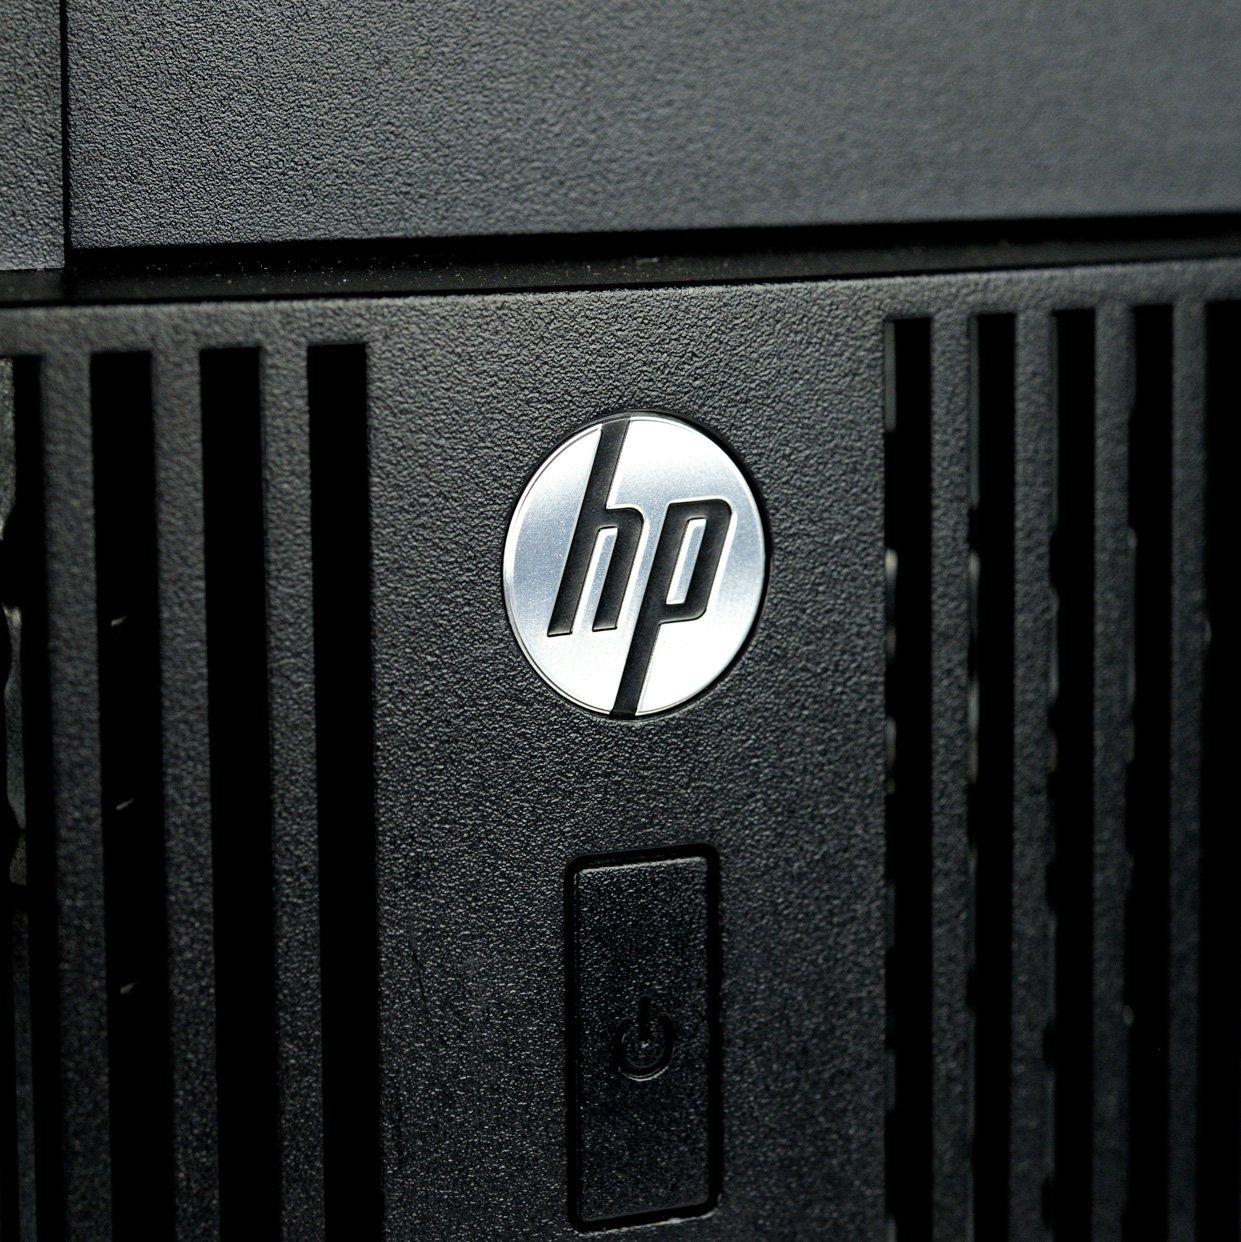 Máy tính đồng bộ HP Compaq 6300 Pro MT